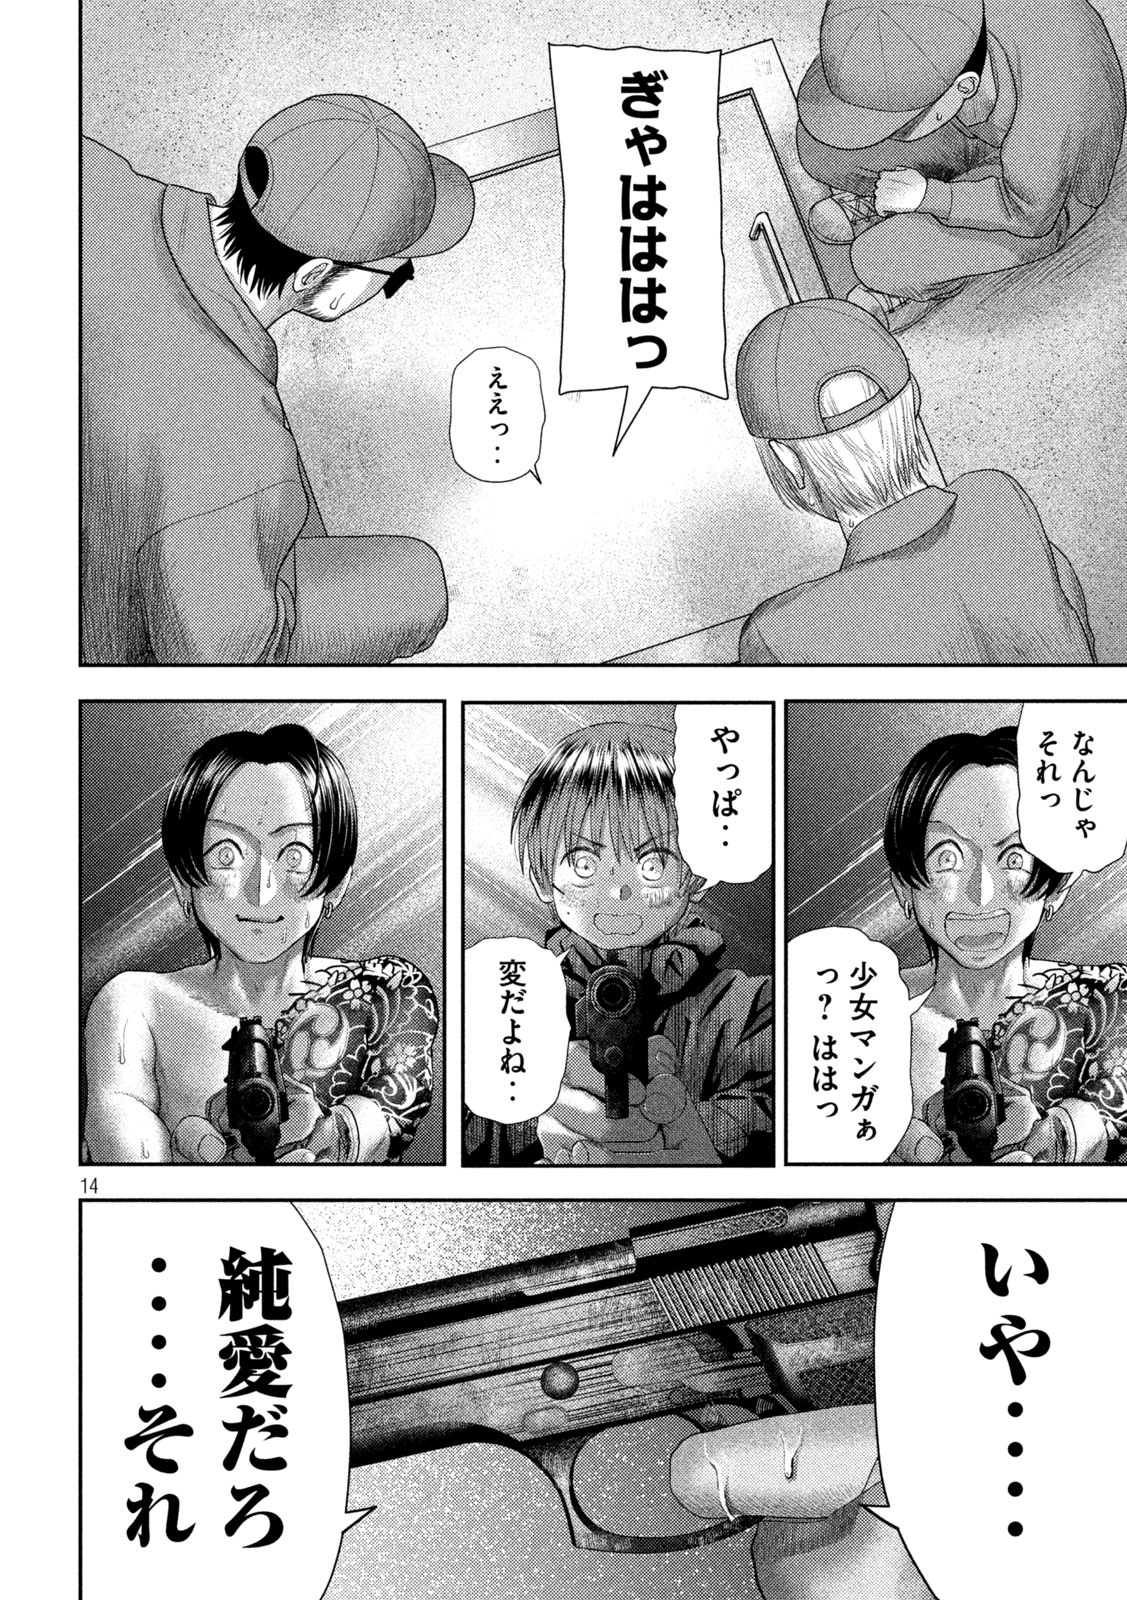 Nezumi no Koi - Chapter 33 - Page 14